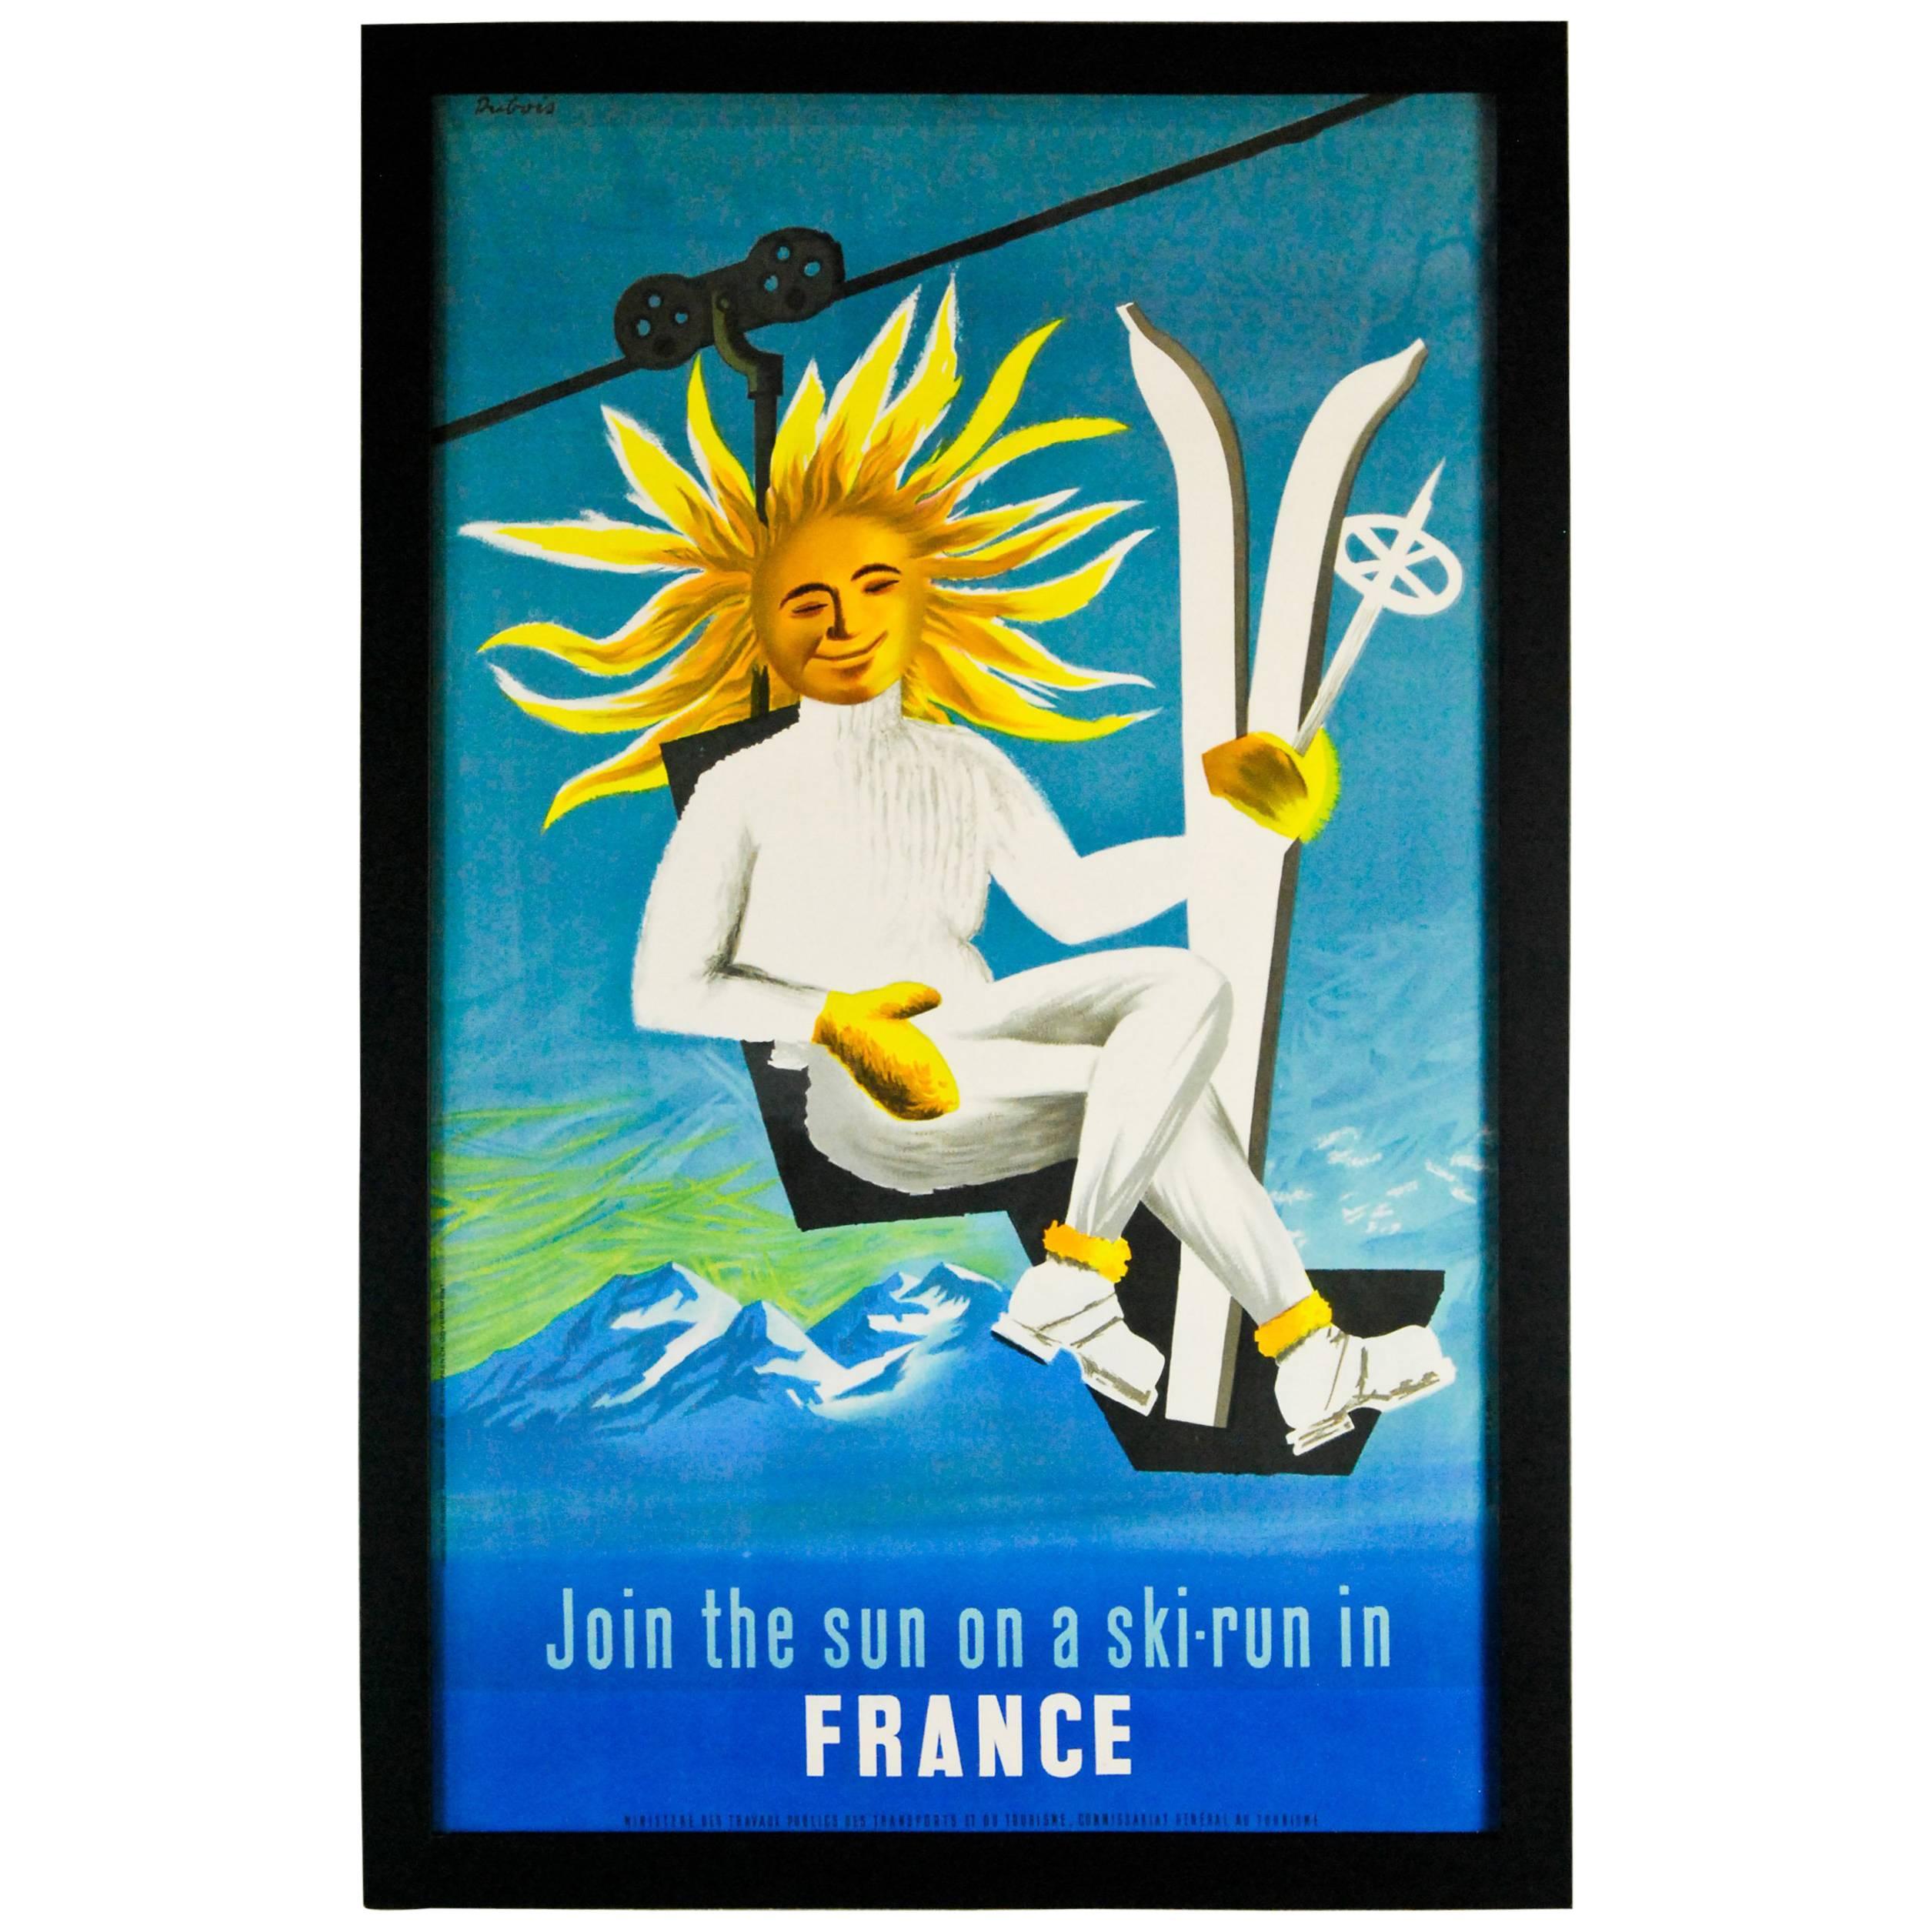 1950 France Tourism Linen Backed Original Travel Poster